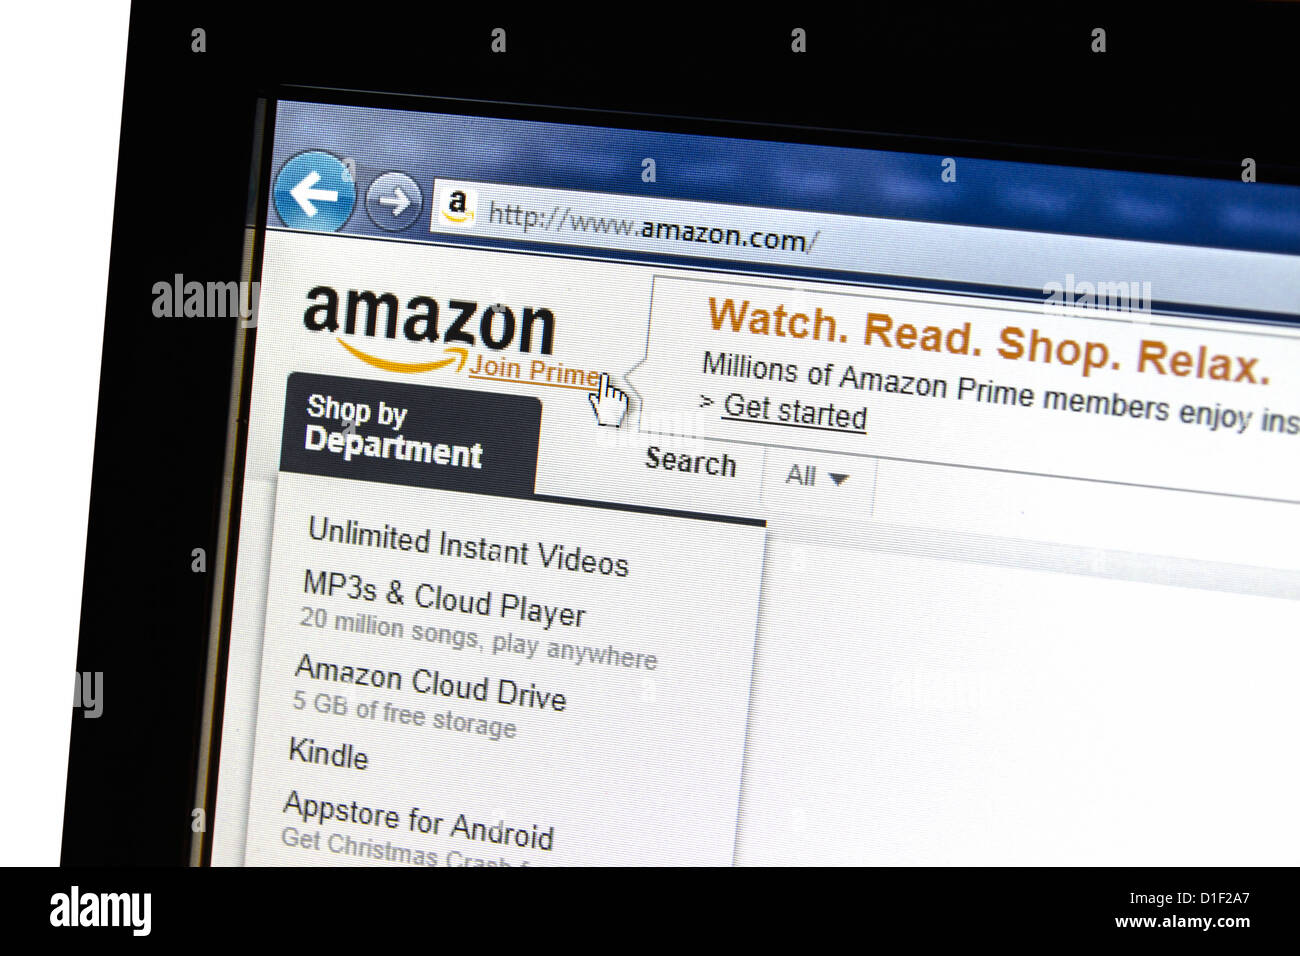 Sitio web Amazon en una pantalla de ordenador. Amazon.com es una compañía de comercio electrónico americano. Foto de stock